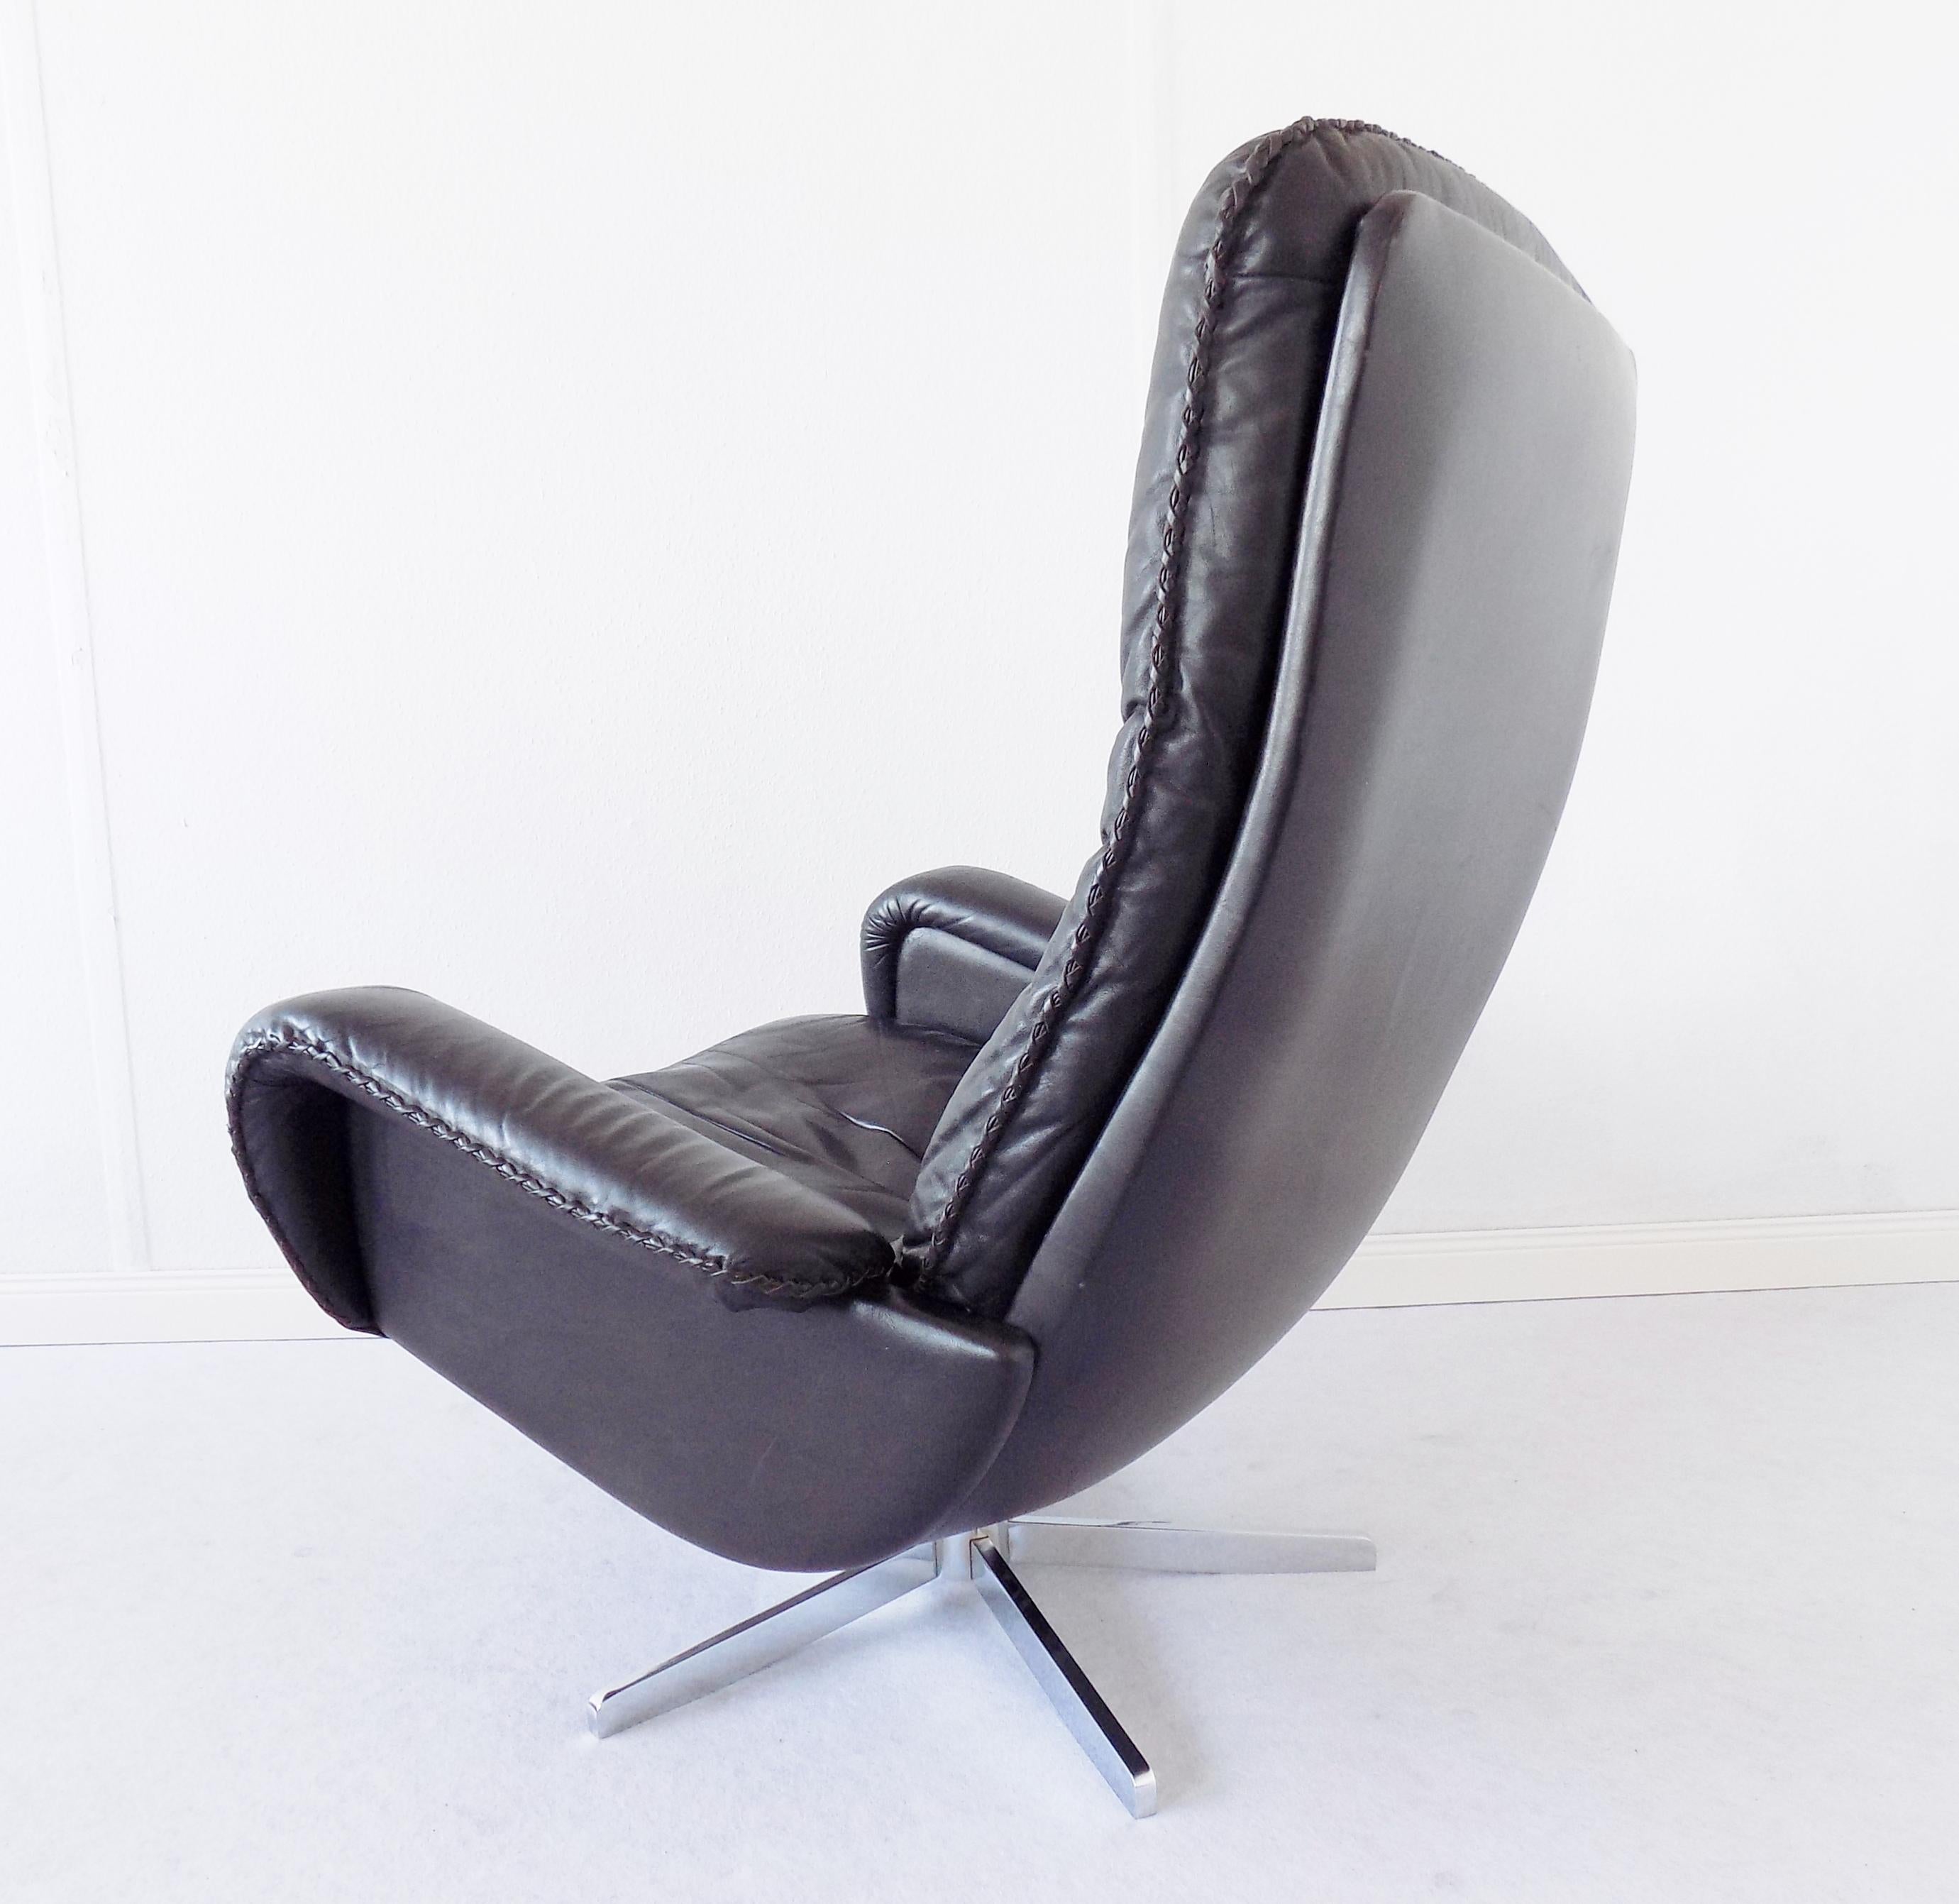 De Sede S 231 The James Bond Chair Black Leather 2